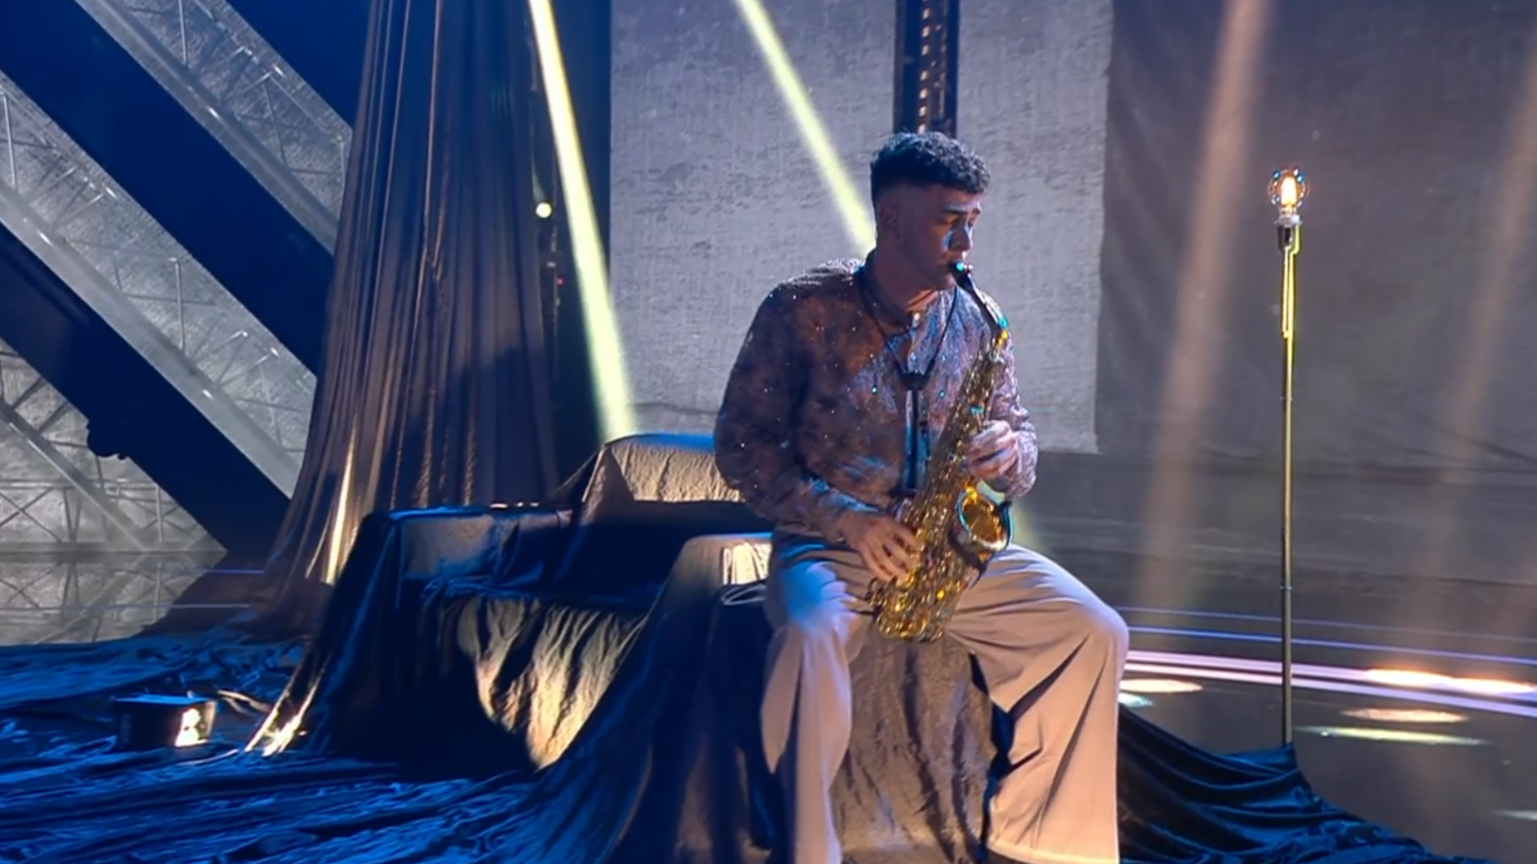 Patrick Bel se anima a tocar el saxofón en su segunda actuación